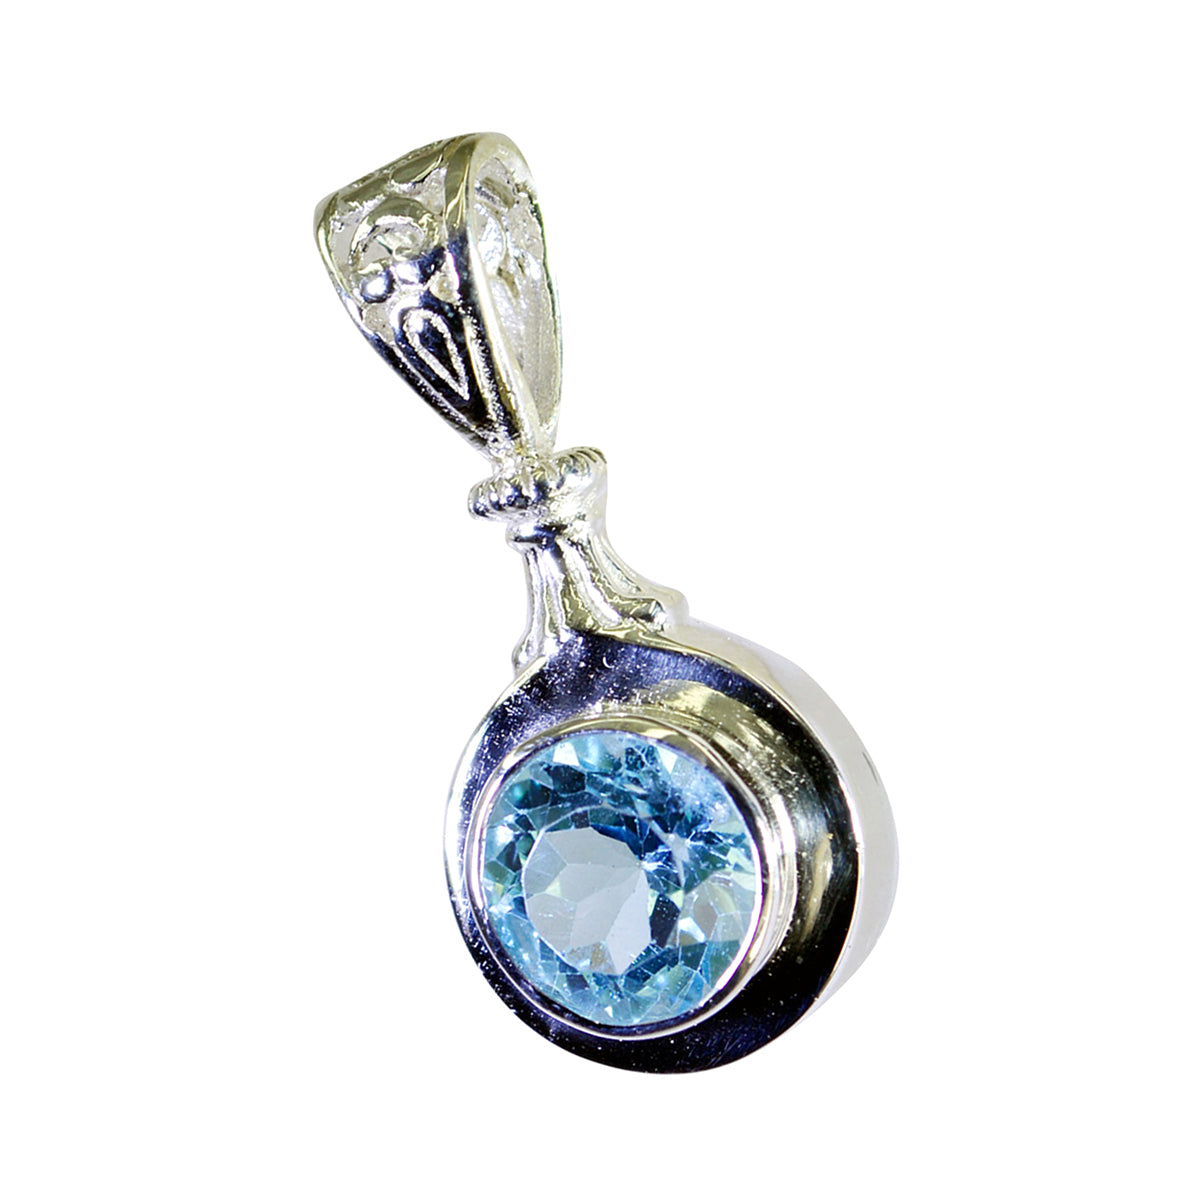 Riyo linda piedra preciosa redonda facetada azul topacio azul colgante de plata de ley regalo para mujer